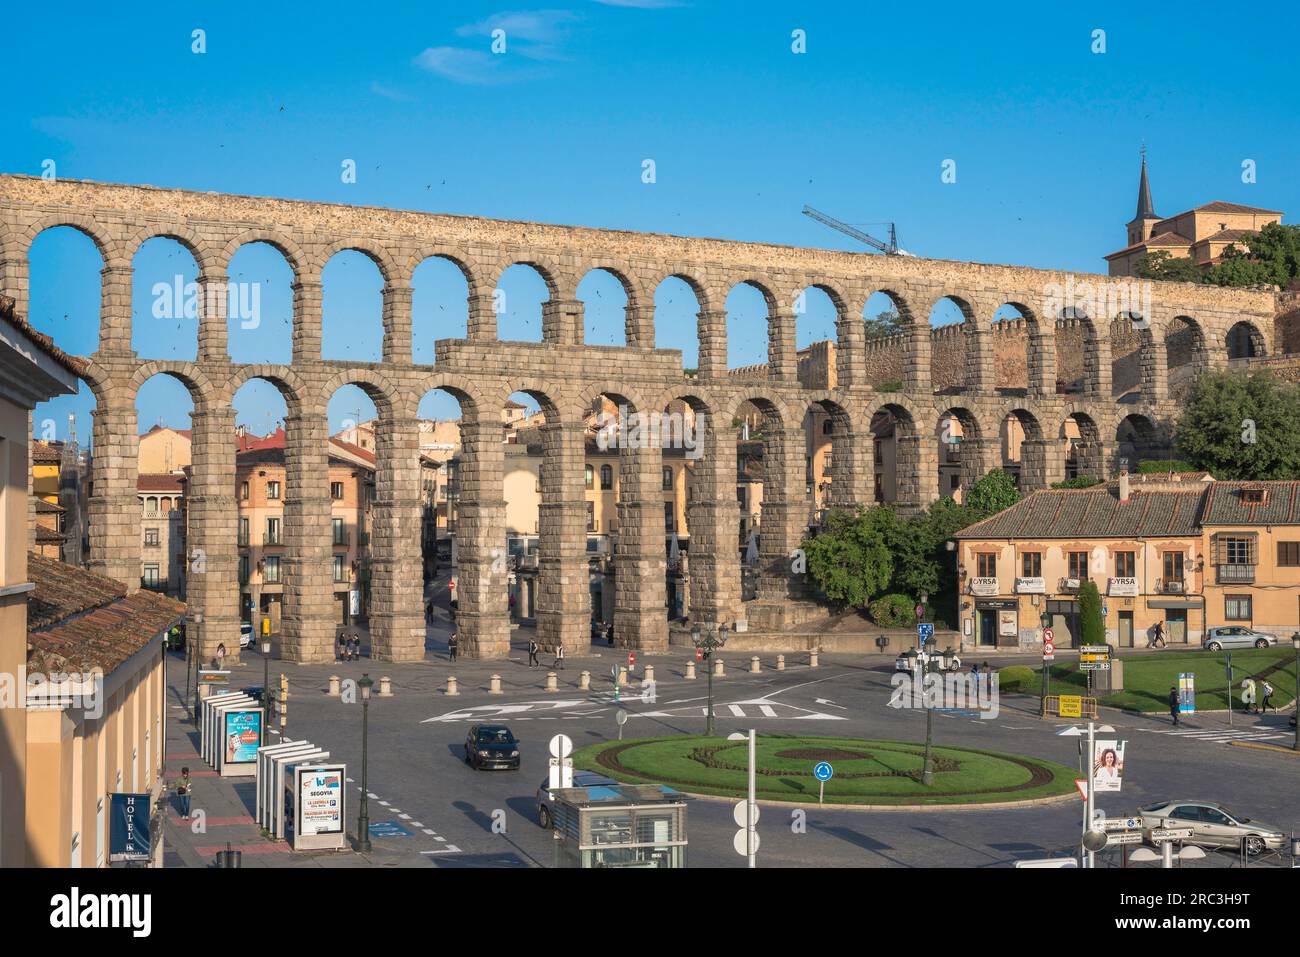 Edificio romano della Spagna, vista dell'acquedotto del i secolo che attraversa la città di Segovia, mostrando la Plaza Acueducto Oriental in primo piano, Spagna Foto Stock